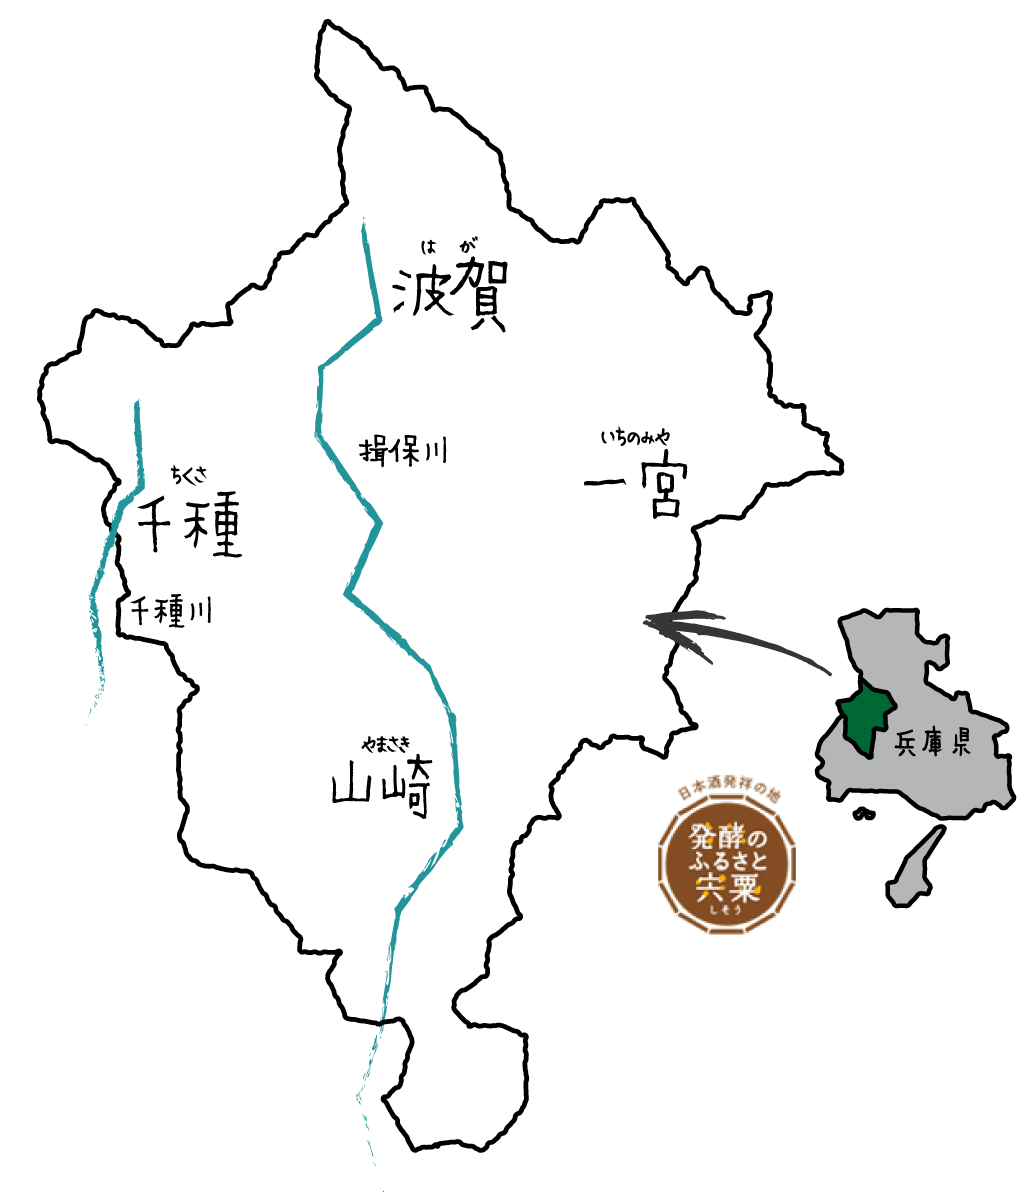 宍粟市のイラストマップ